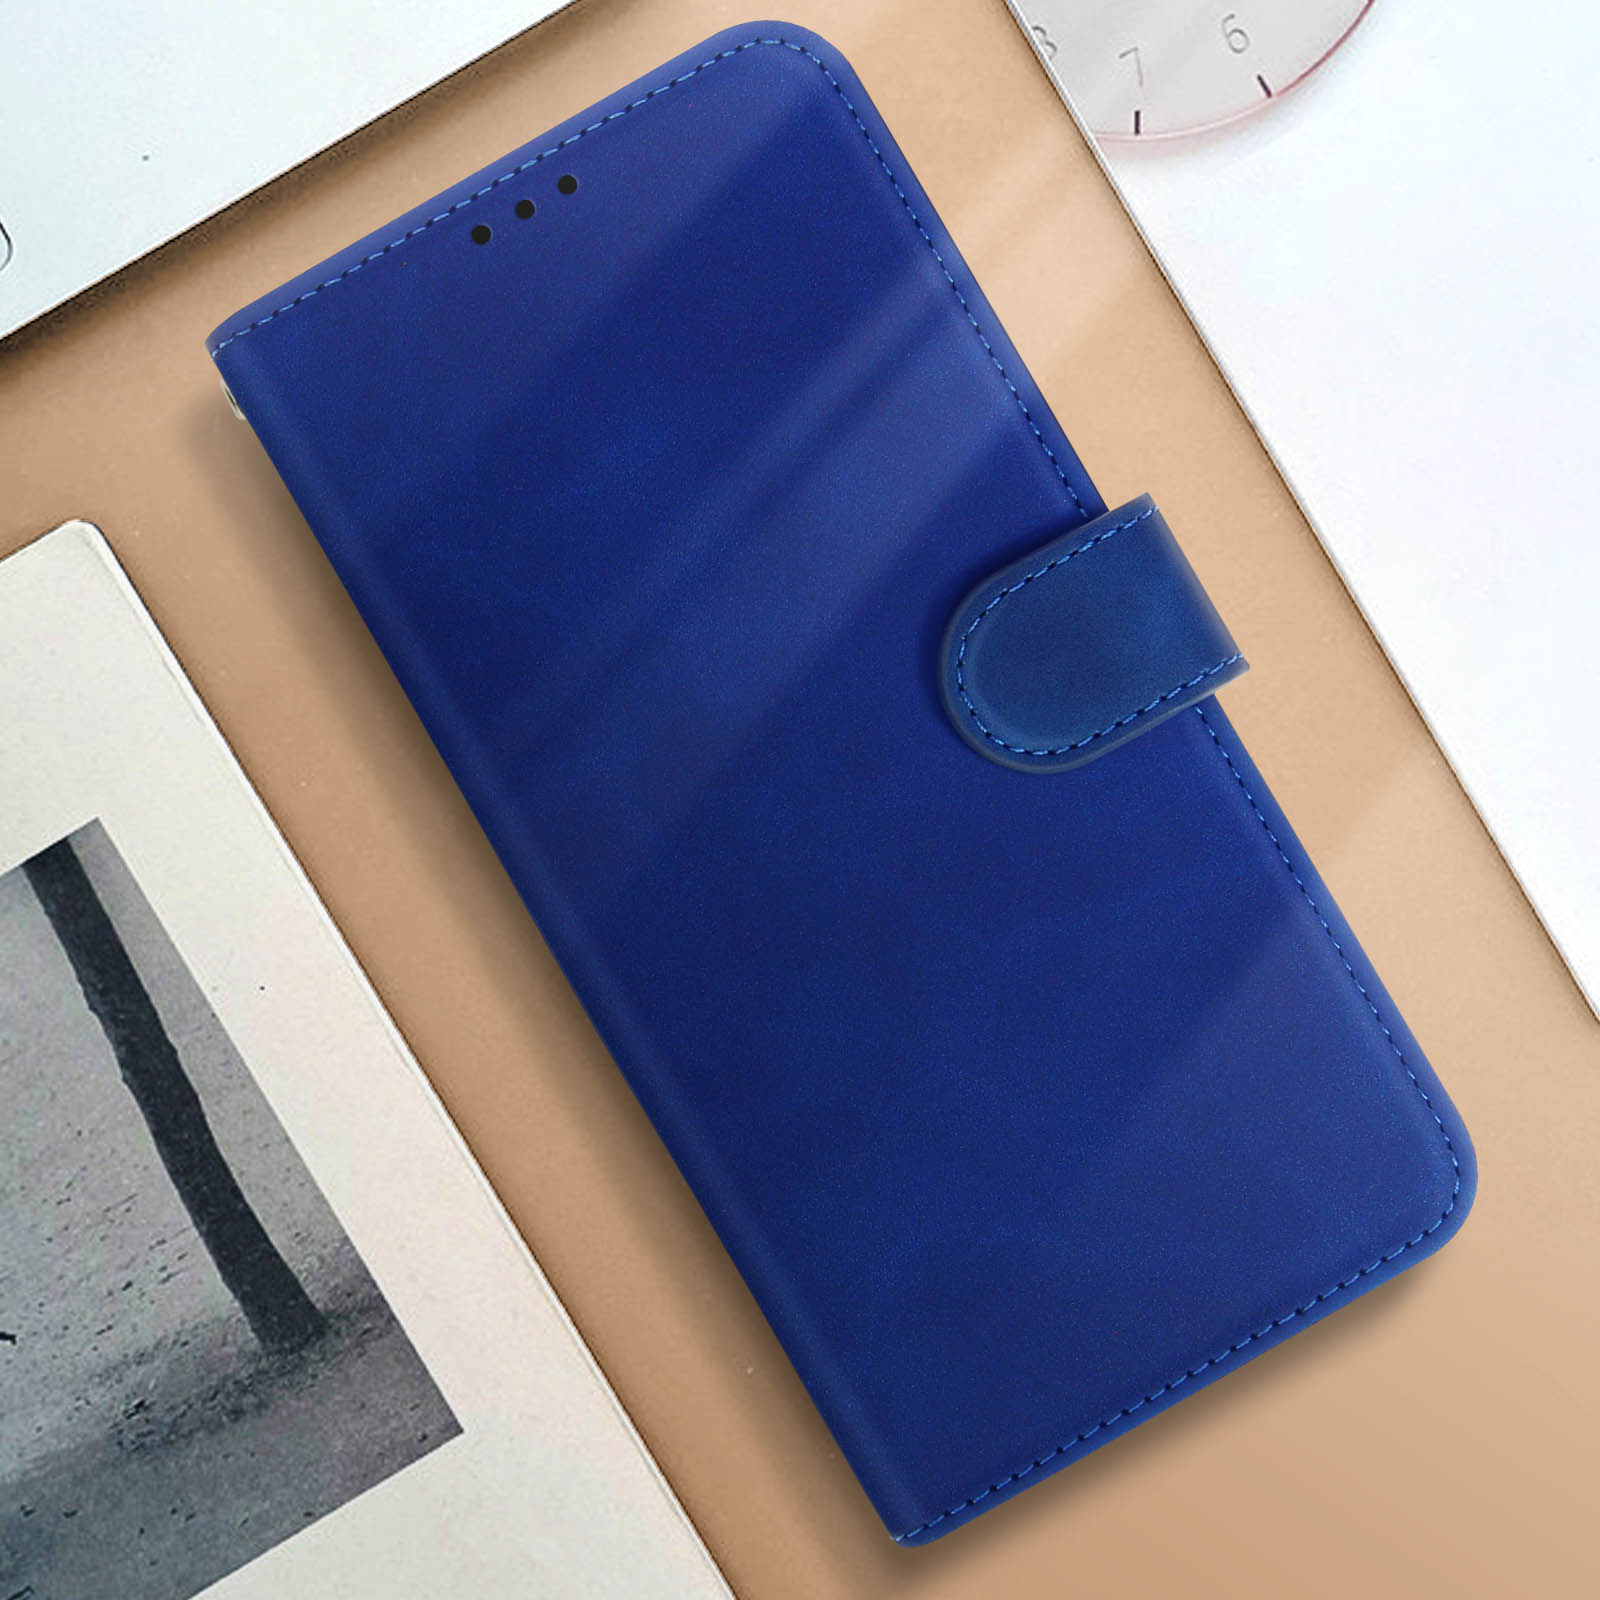 AVIZAR Cover Nokia, Bookcover, Blau Nokia G42 5G, Series, Sleek